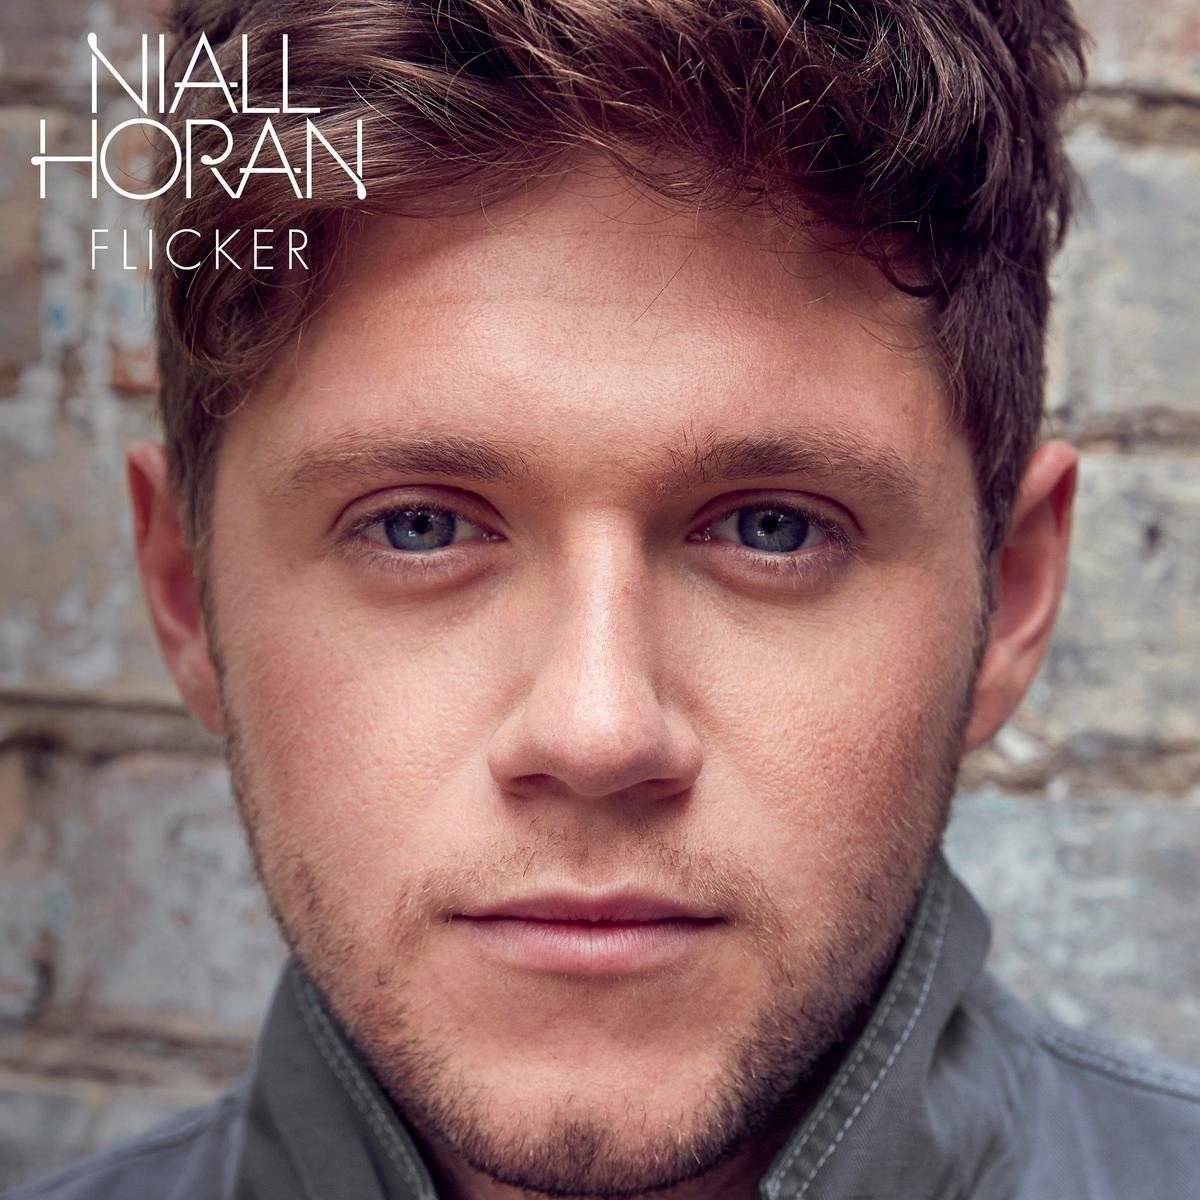 CD Niall Horan Flicker Deluxe